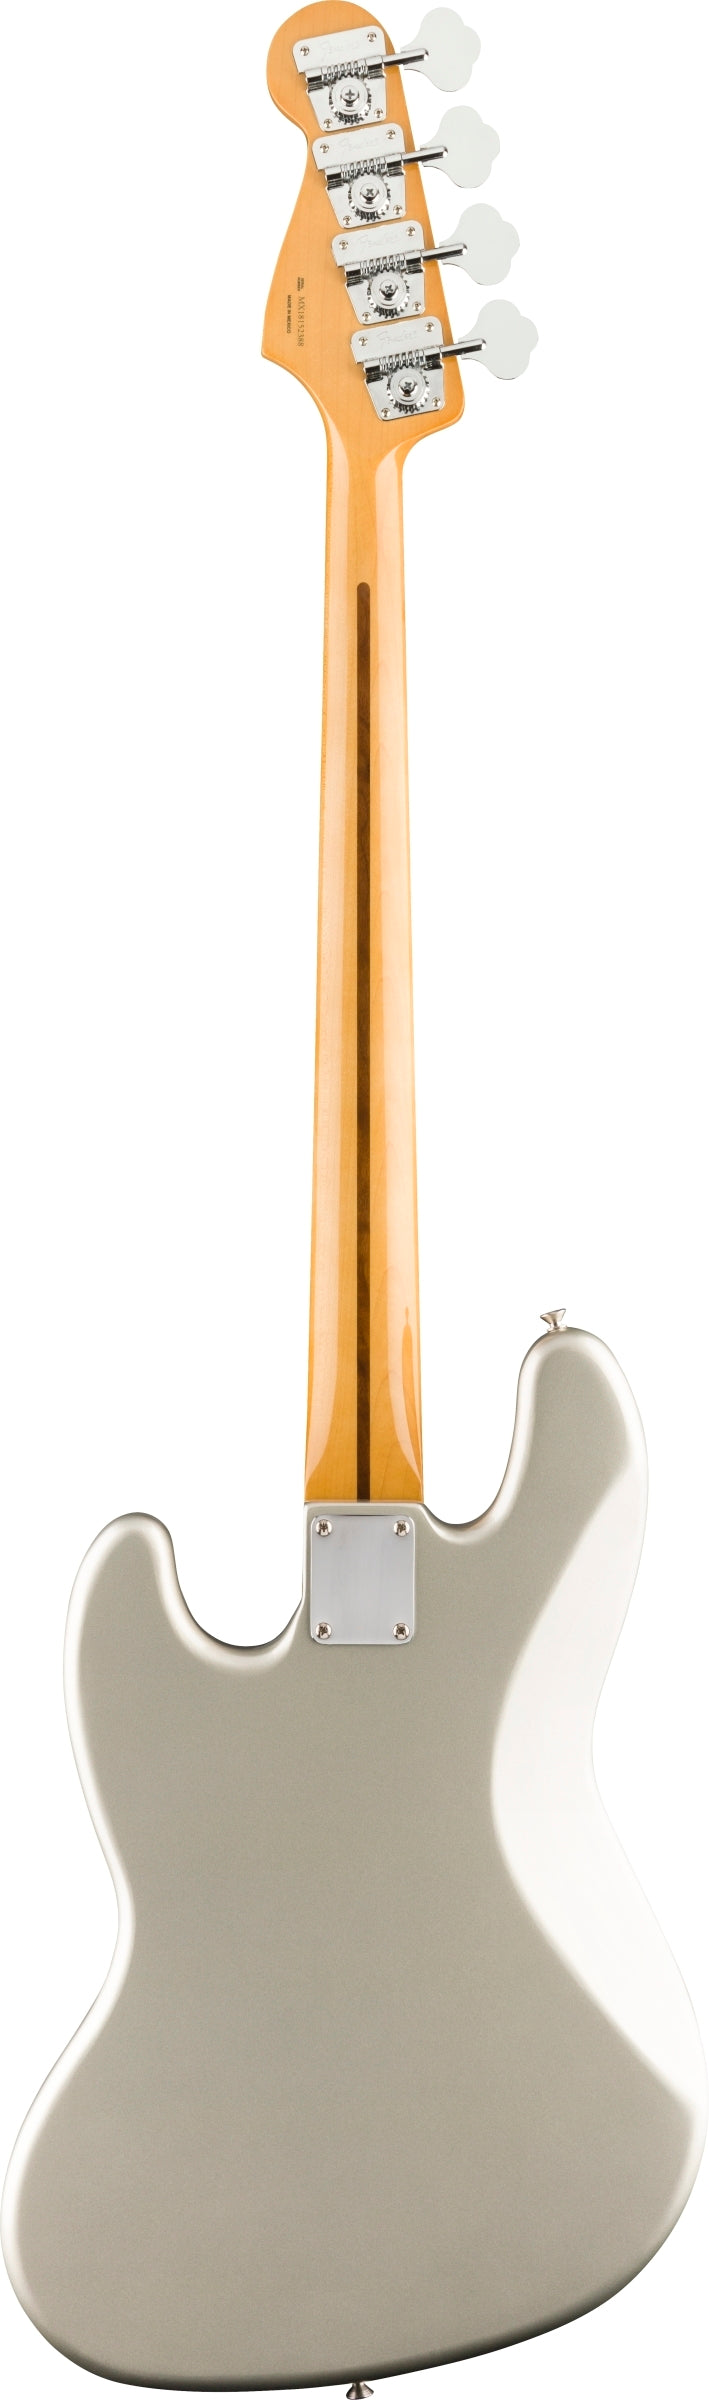 Fender VINTERA® '70S JAZZ BASS® (Inca Silver) - Electric Bass Guitar 低音電結他